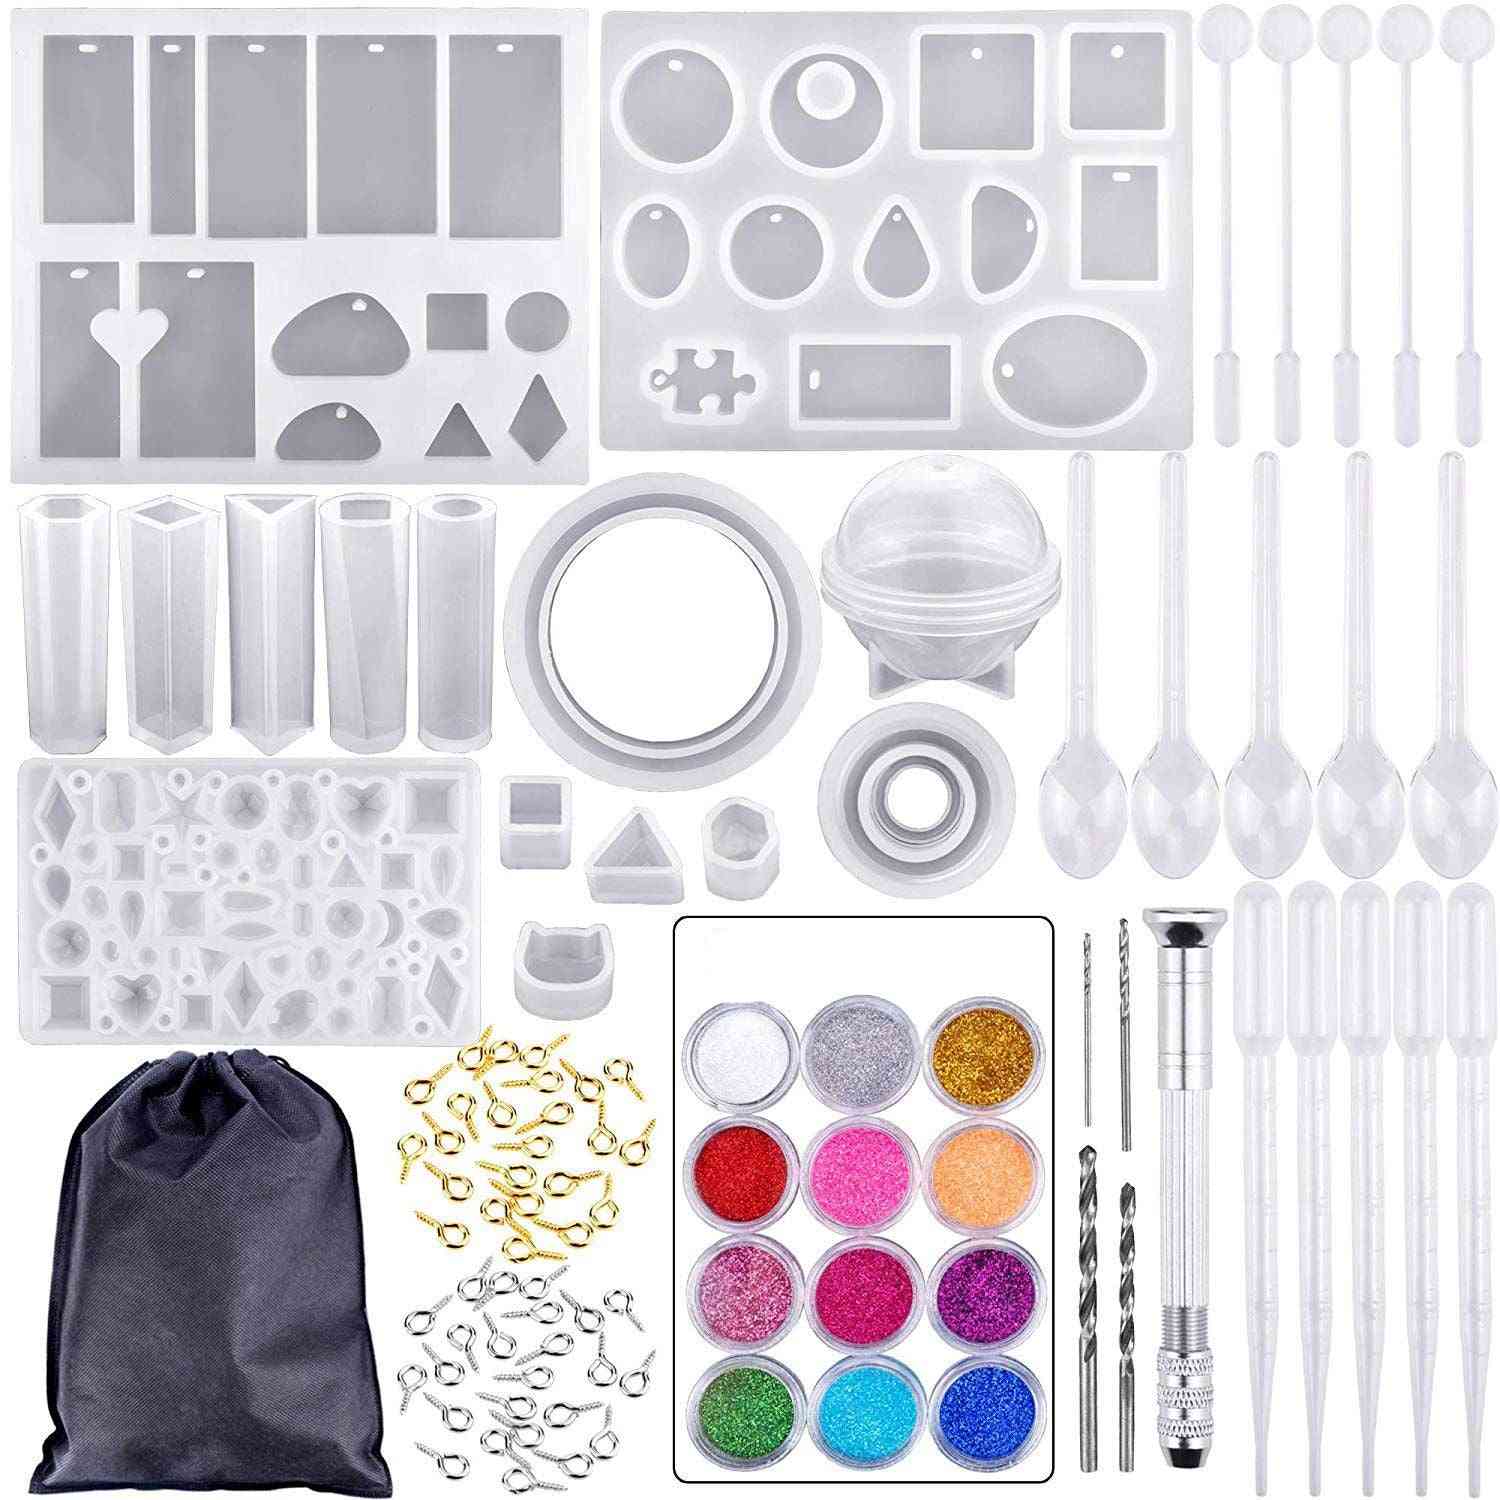 Conjunto de moldes e ferramentas de fundição de silicone com um saco de armazenamento preto para a confecção de joias artesanais